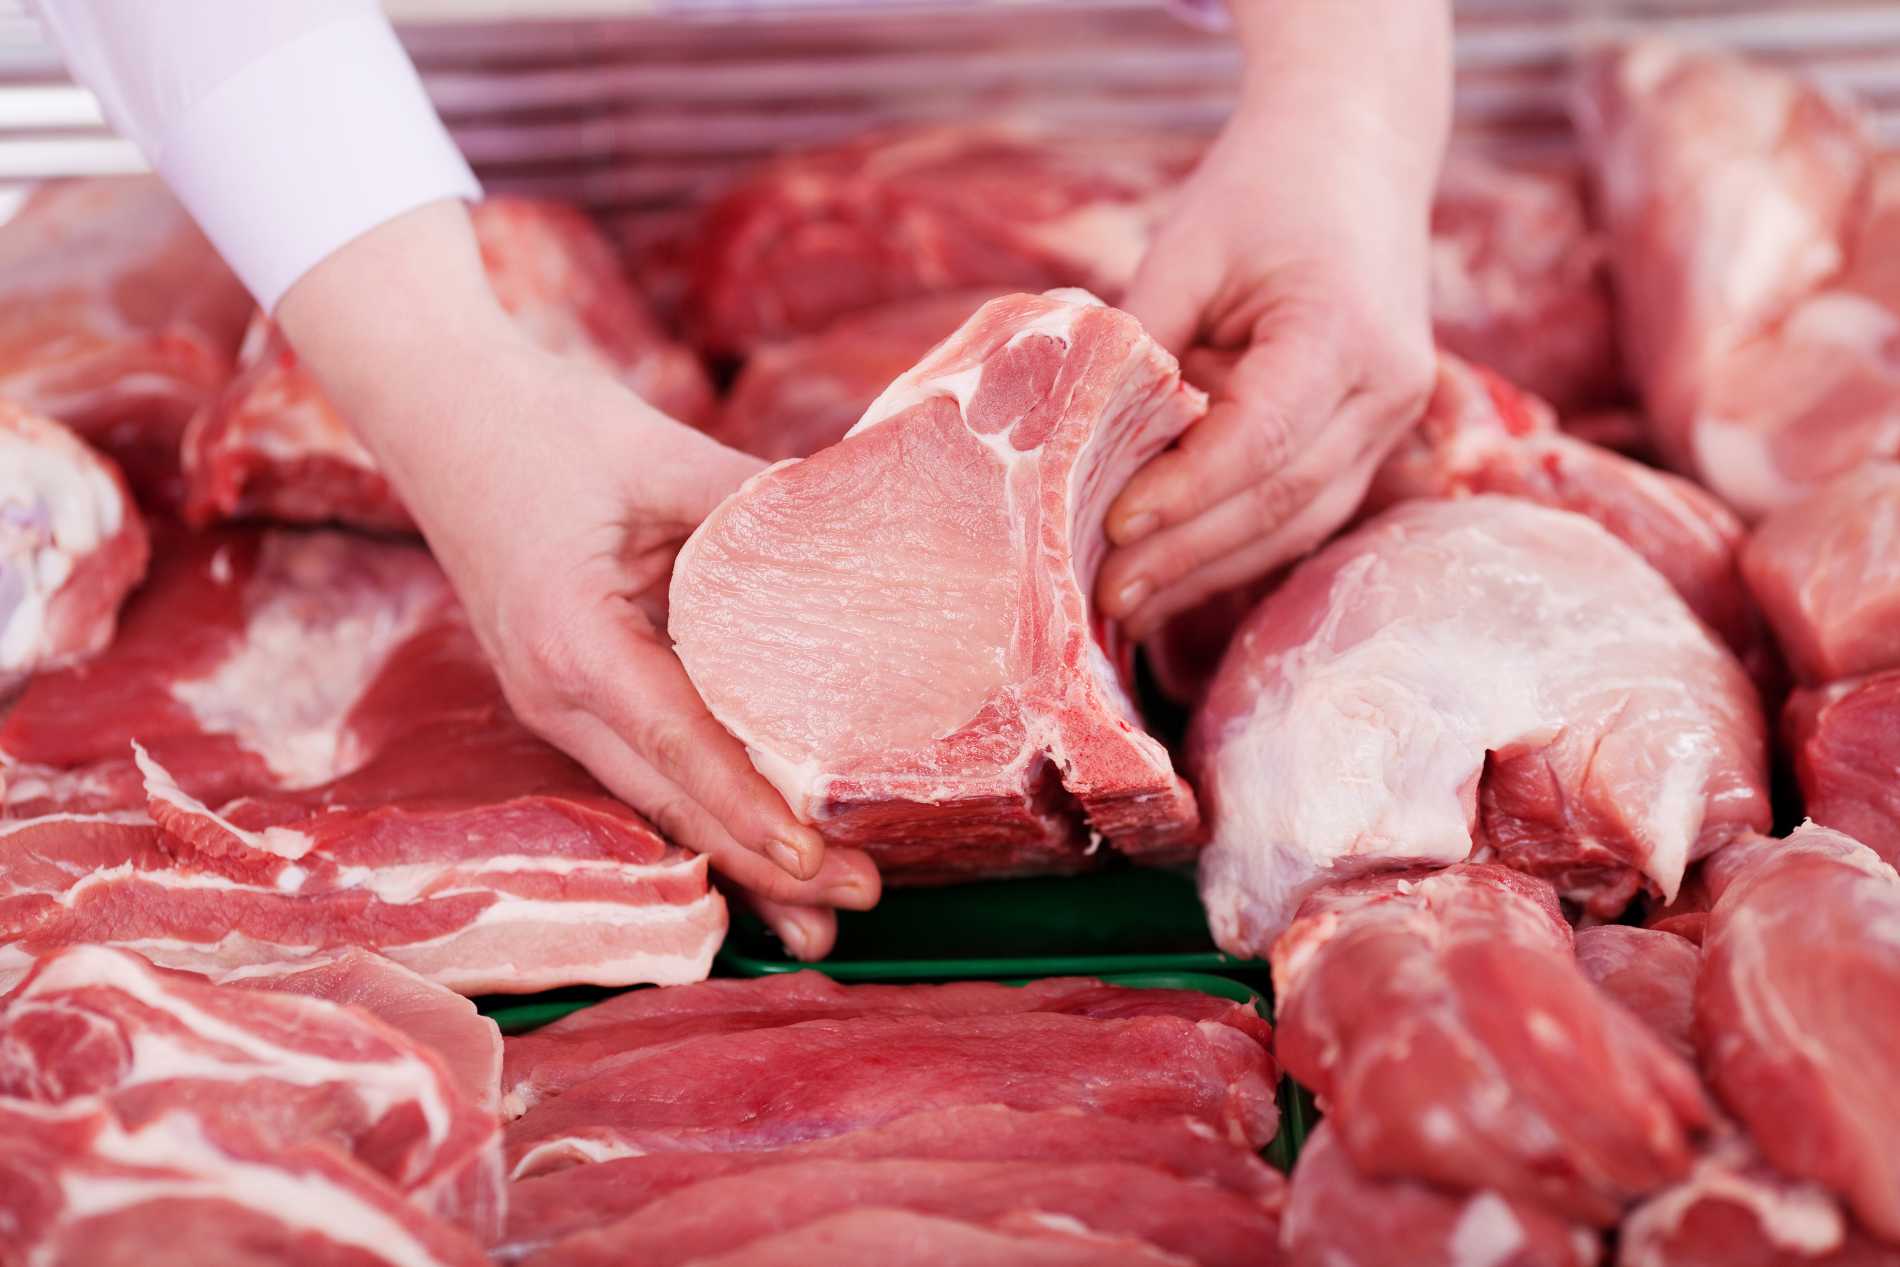 Thịt động vật giết mổ nhân đạo không chỉ đảm bảo về chất lượng vệ sinh mà còn ngon hơn thịt động vật giết mổ thông thường